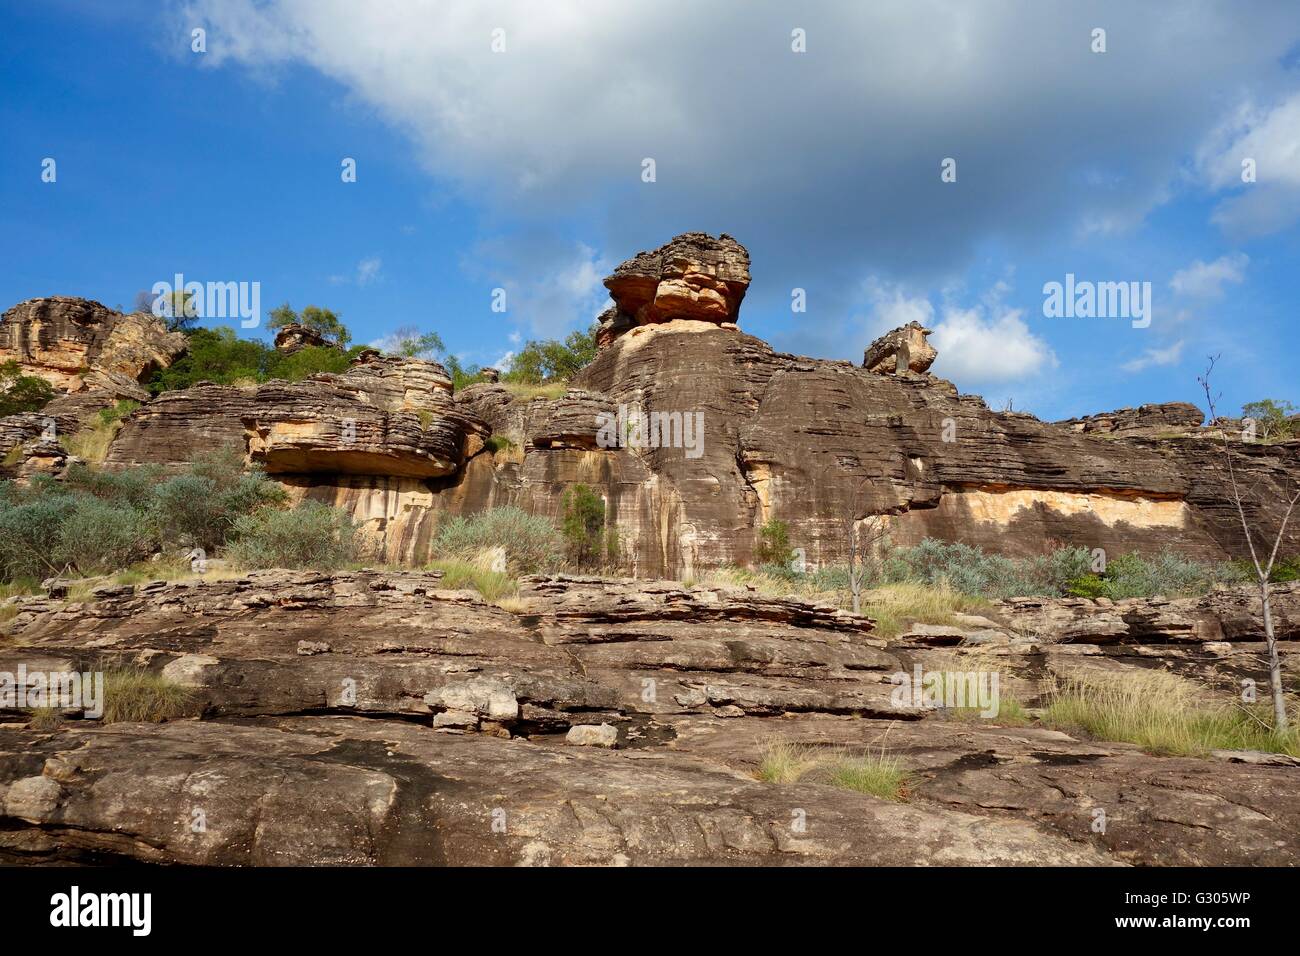 Vue sur les roches avec des peintures rupestres connu sous le nom de 'Mountford Site' près de East Alligator River, à l'ouest de la terre d'Arnhem, Australie Banque D'Images